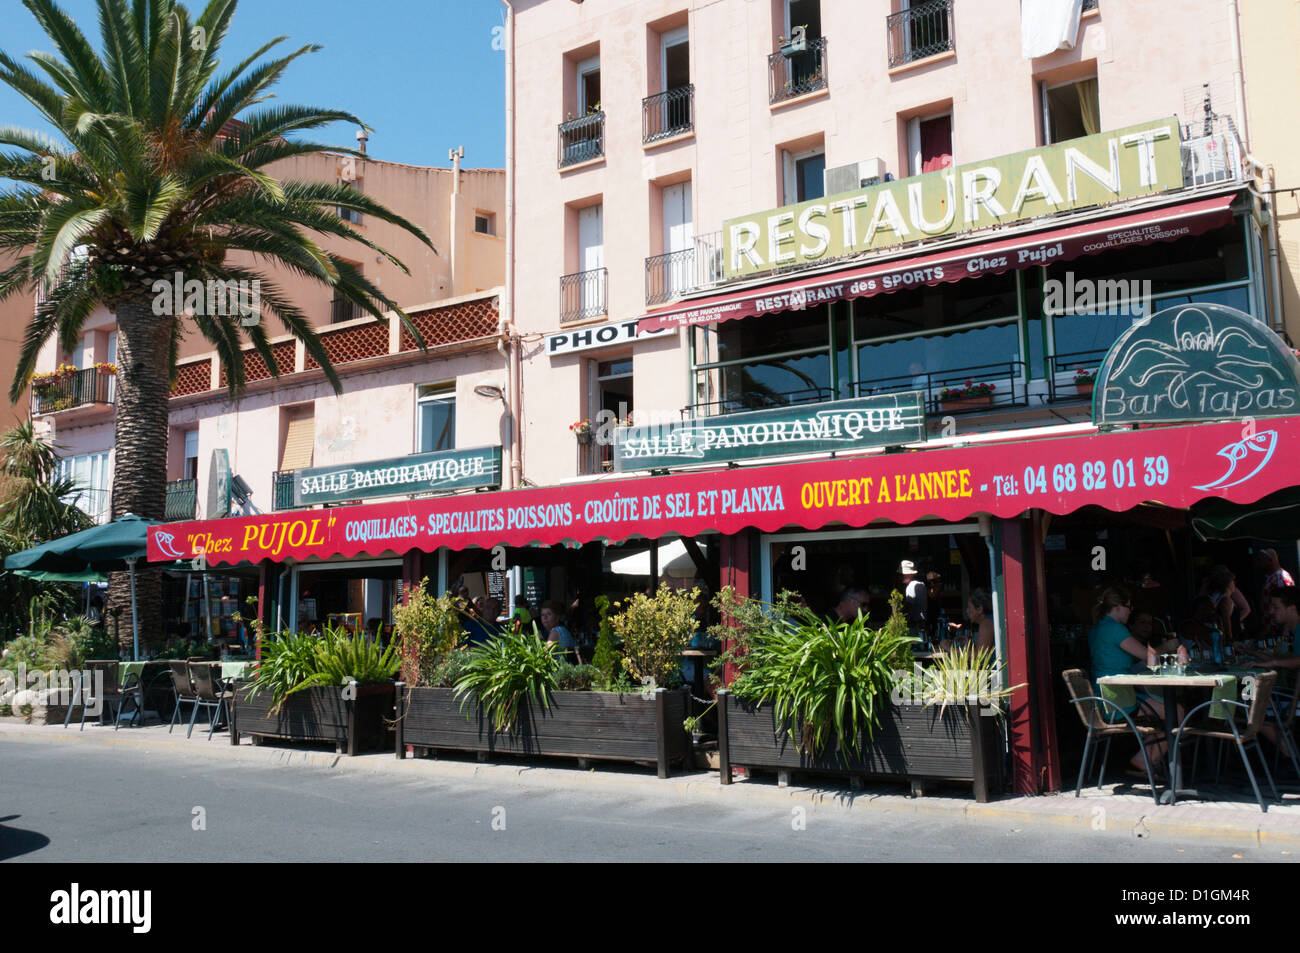 Chez Pujol' restaurant à Port Vendres, France Photo Stock - Alamy